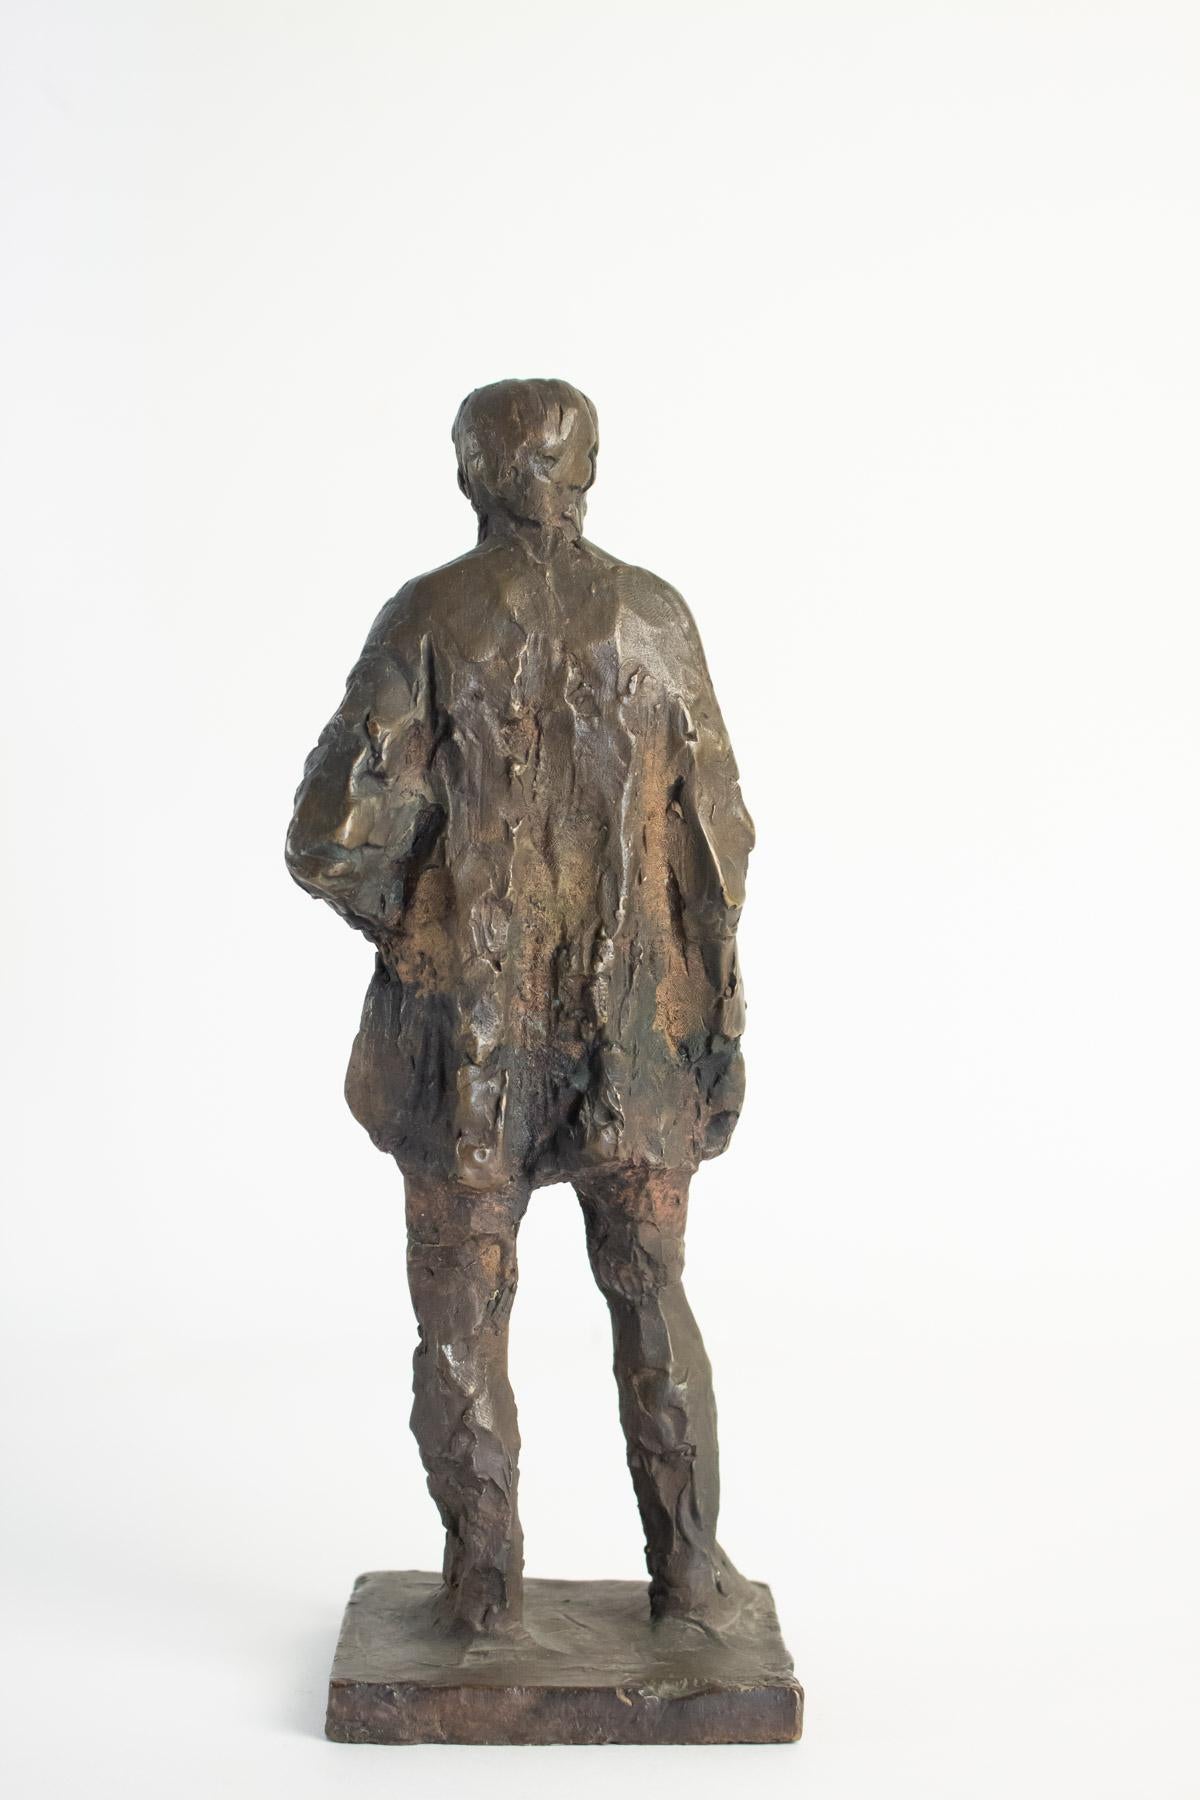 European Bronze Sculpture of Anton Worjac by Sculptor Jurcak, 20th Century, Brown Patina